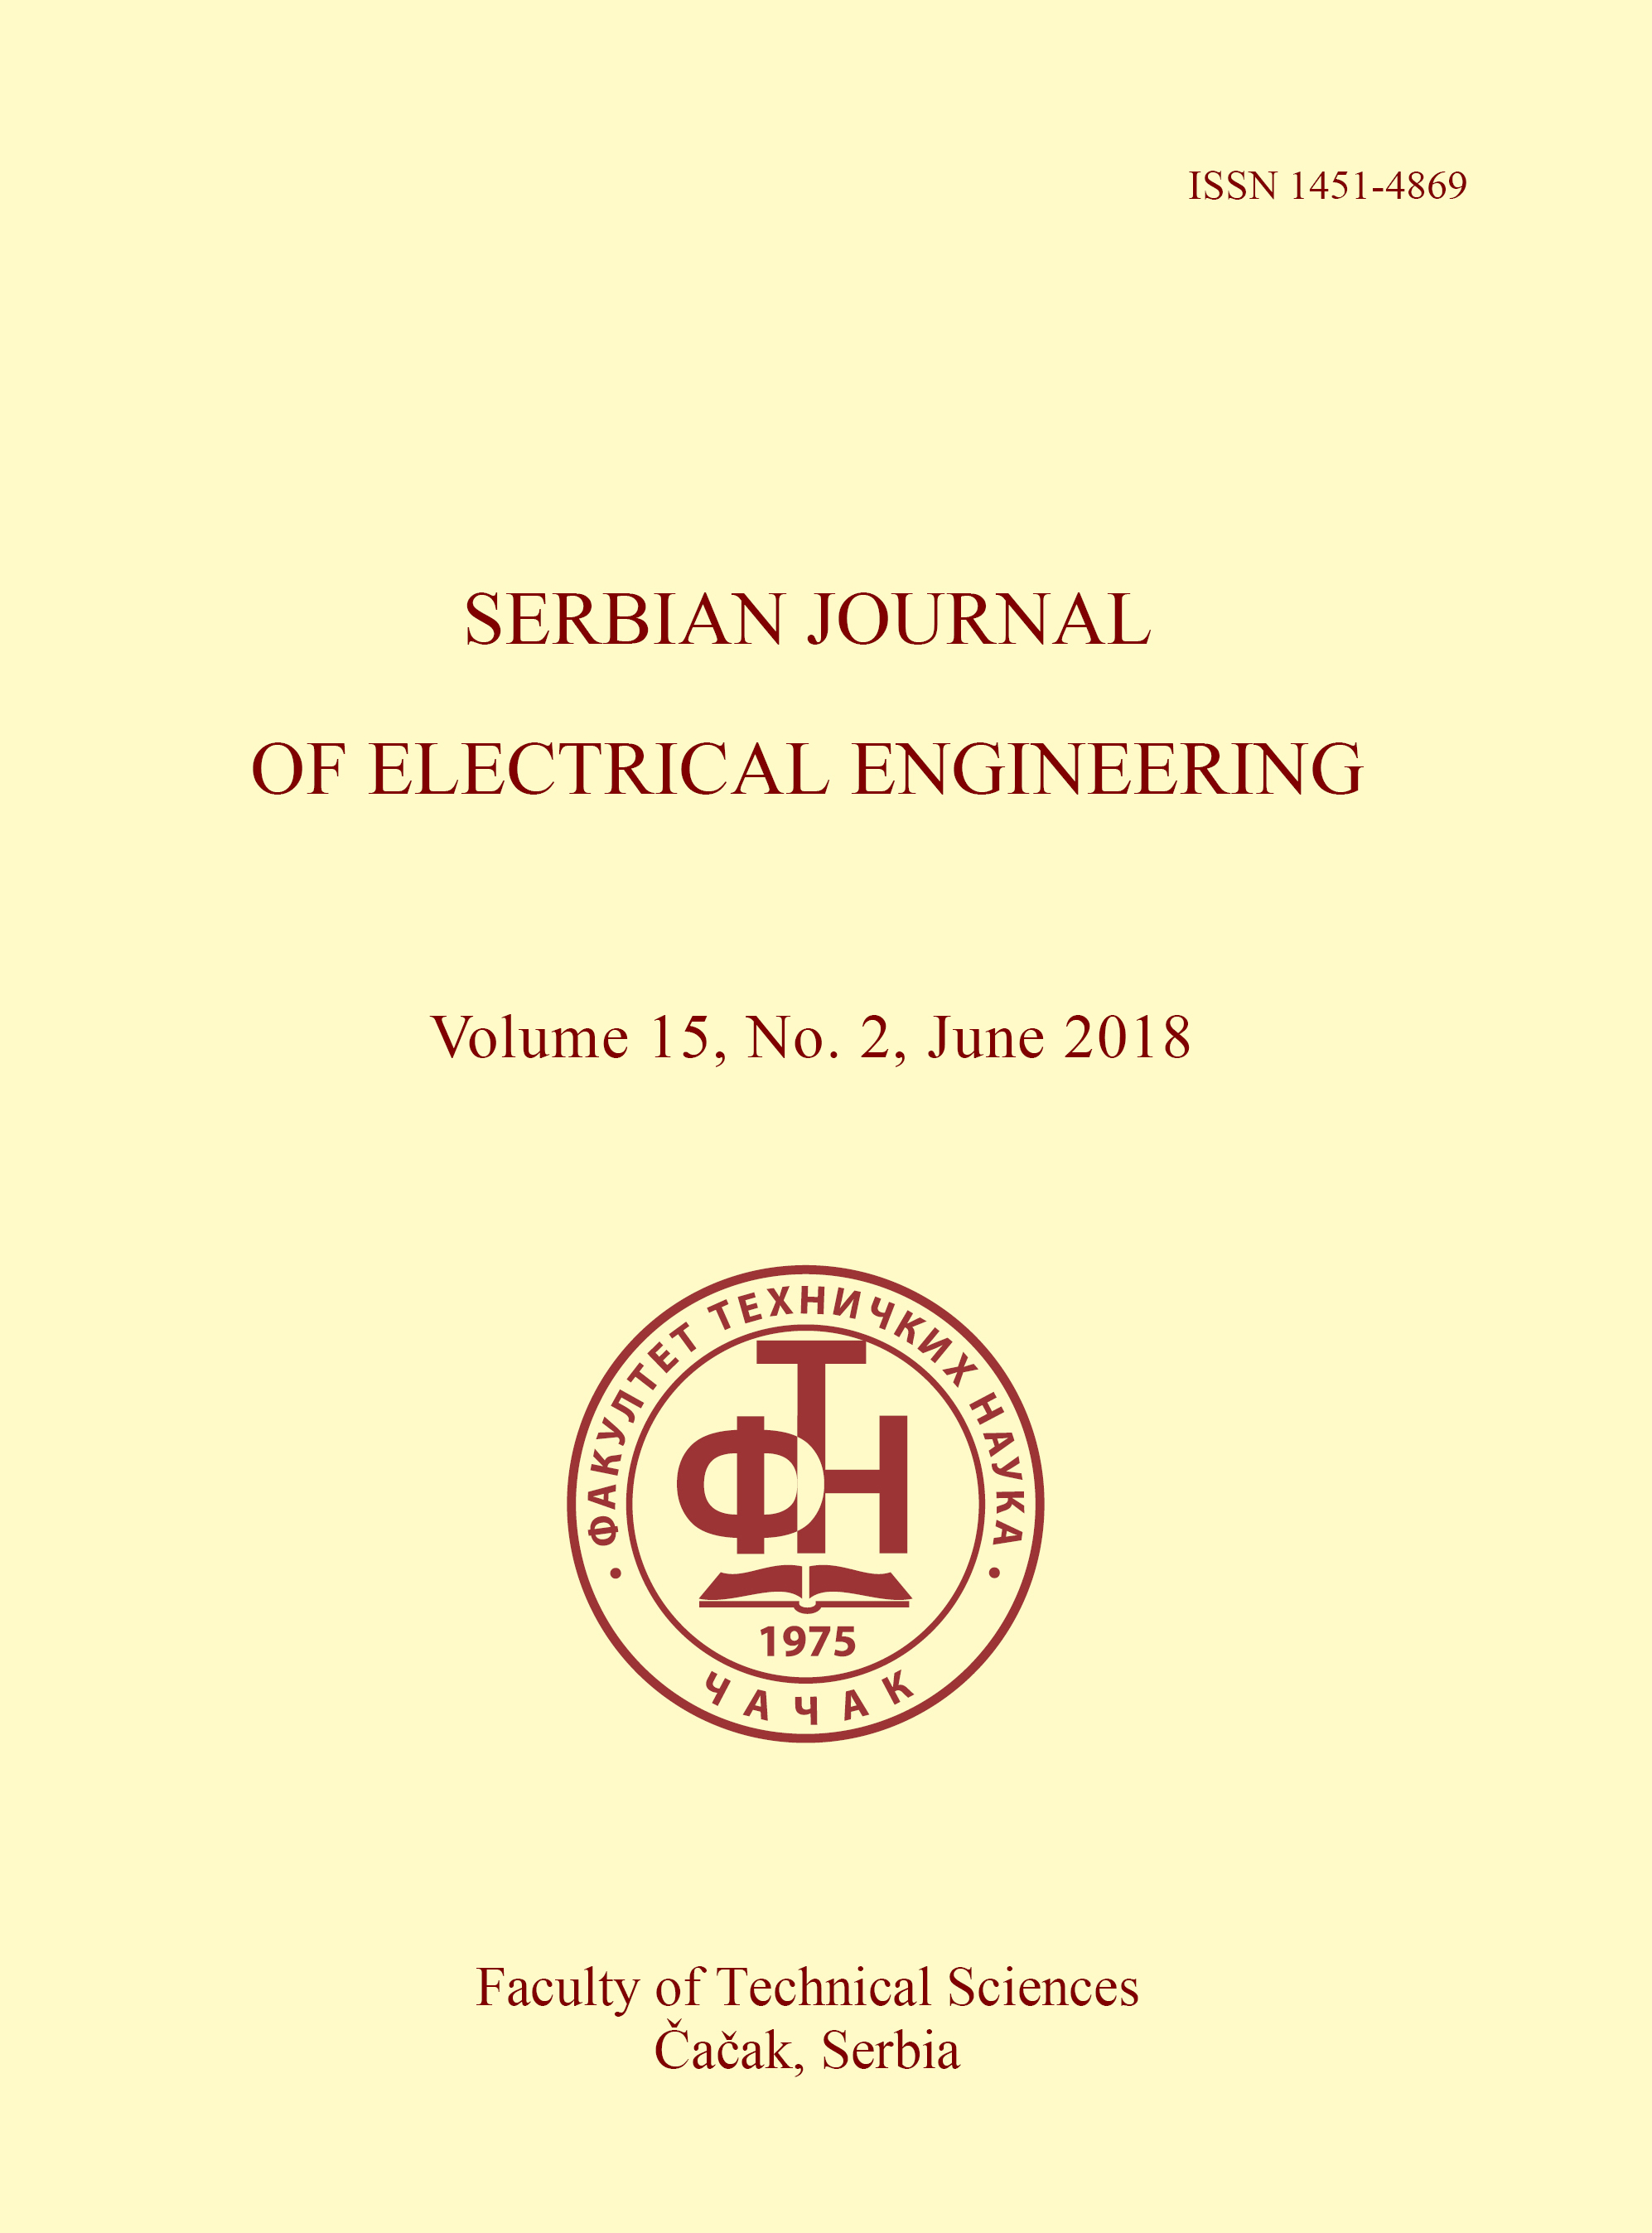 Electrician's Journal-Electrician's Journal